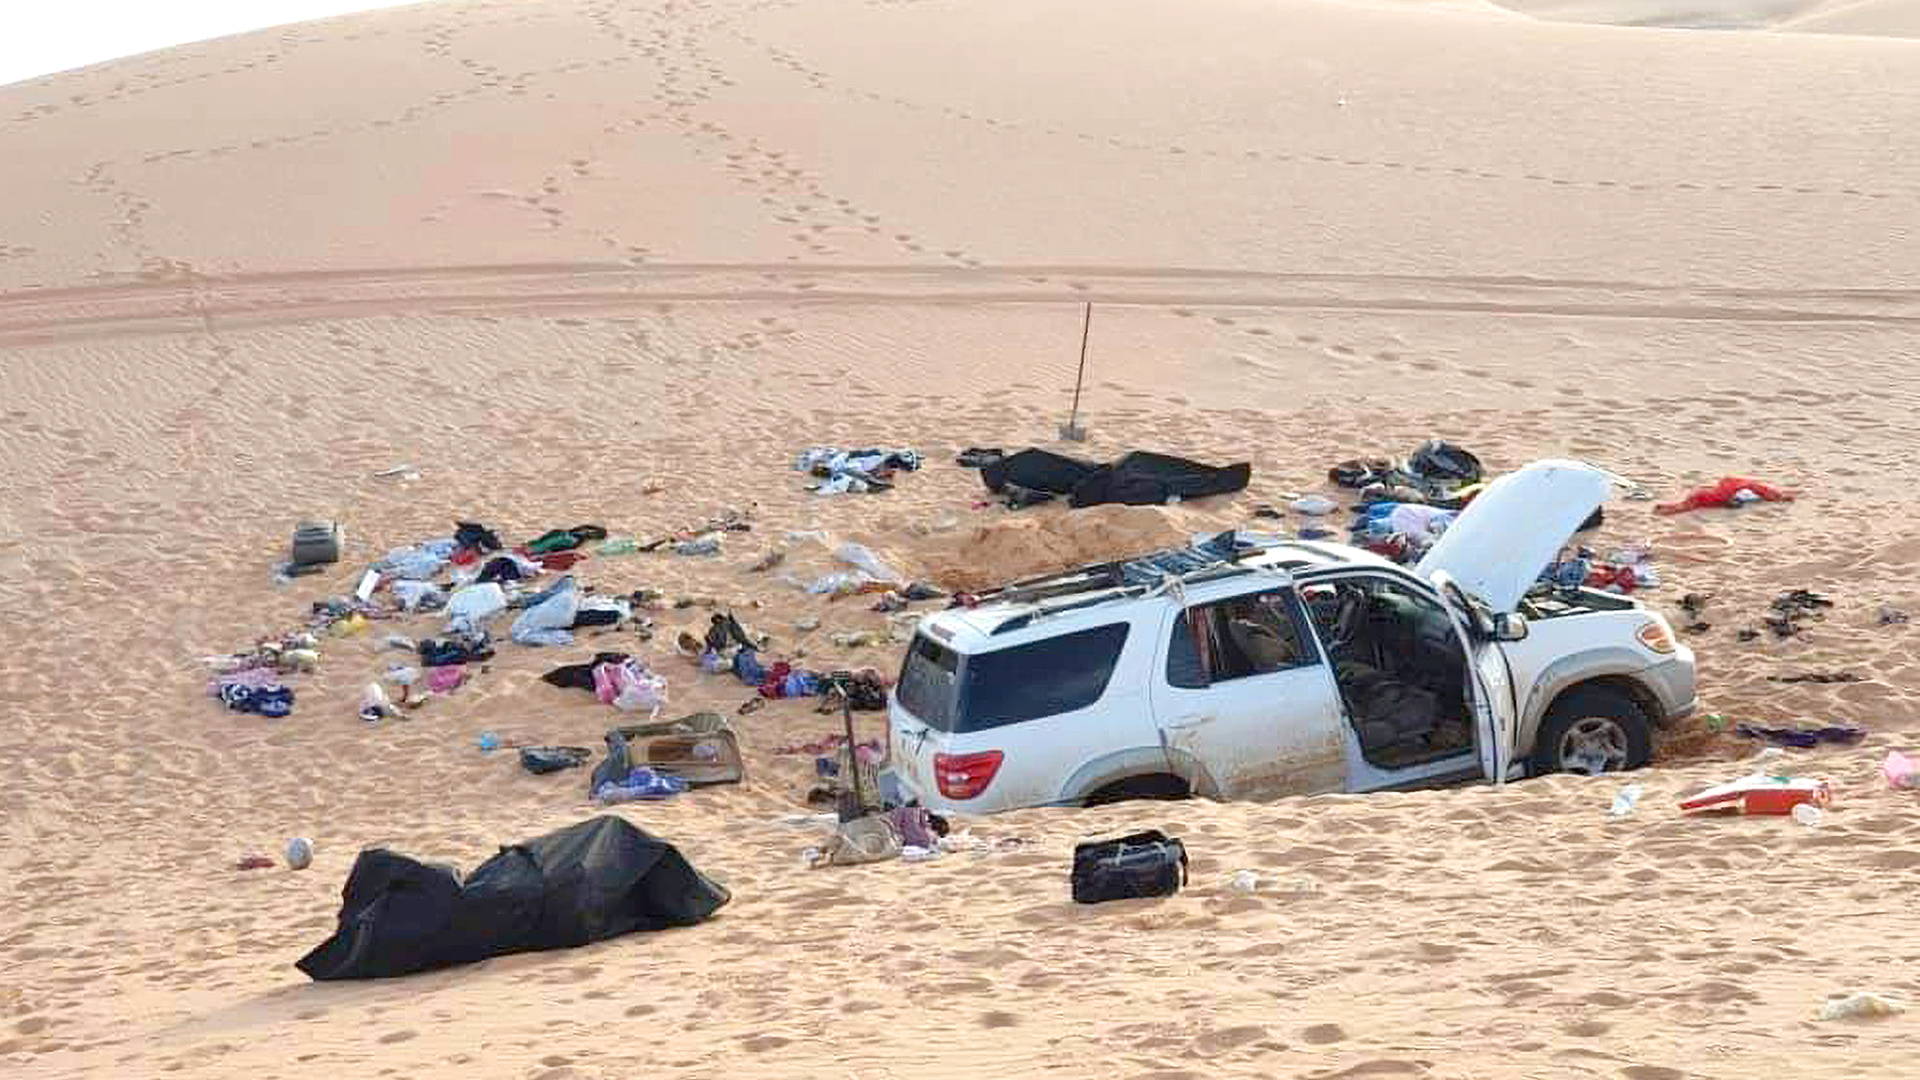 Λιβύη: Ομαδικός τάφος με 42 πτώματα εντοπίστηκε στη Σύρτη